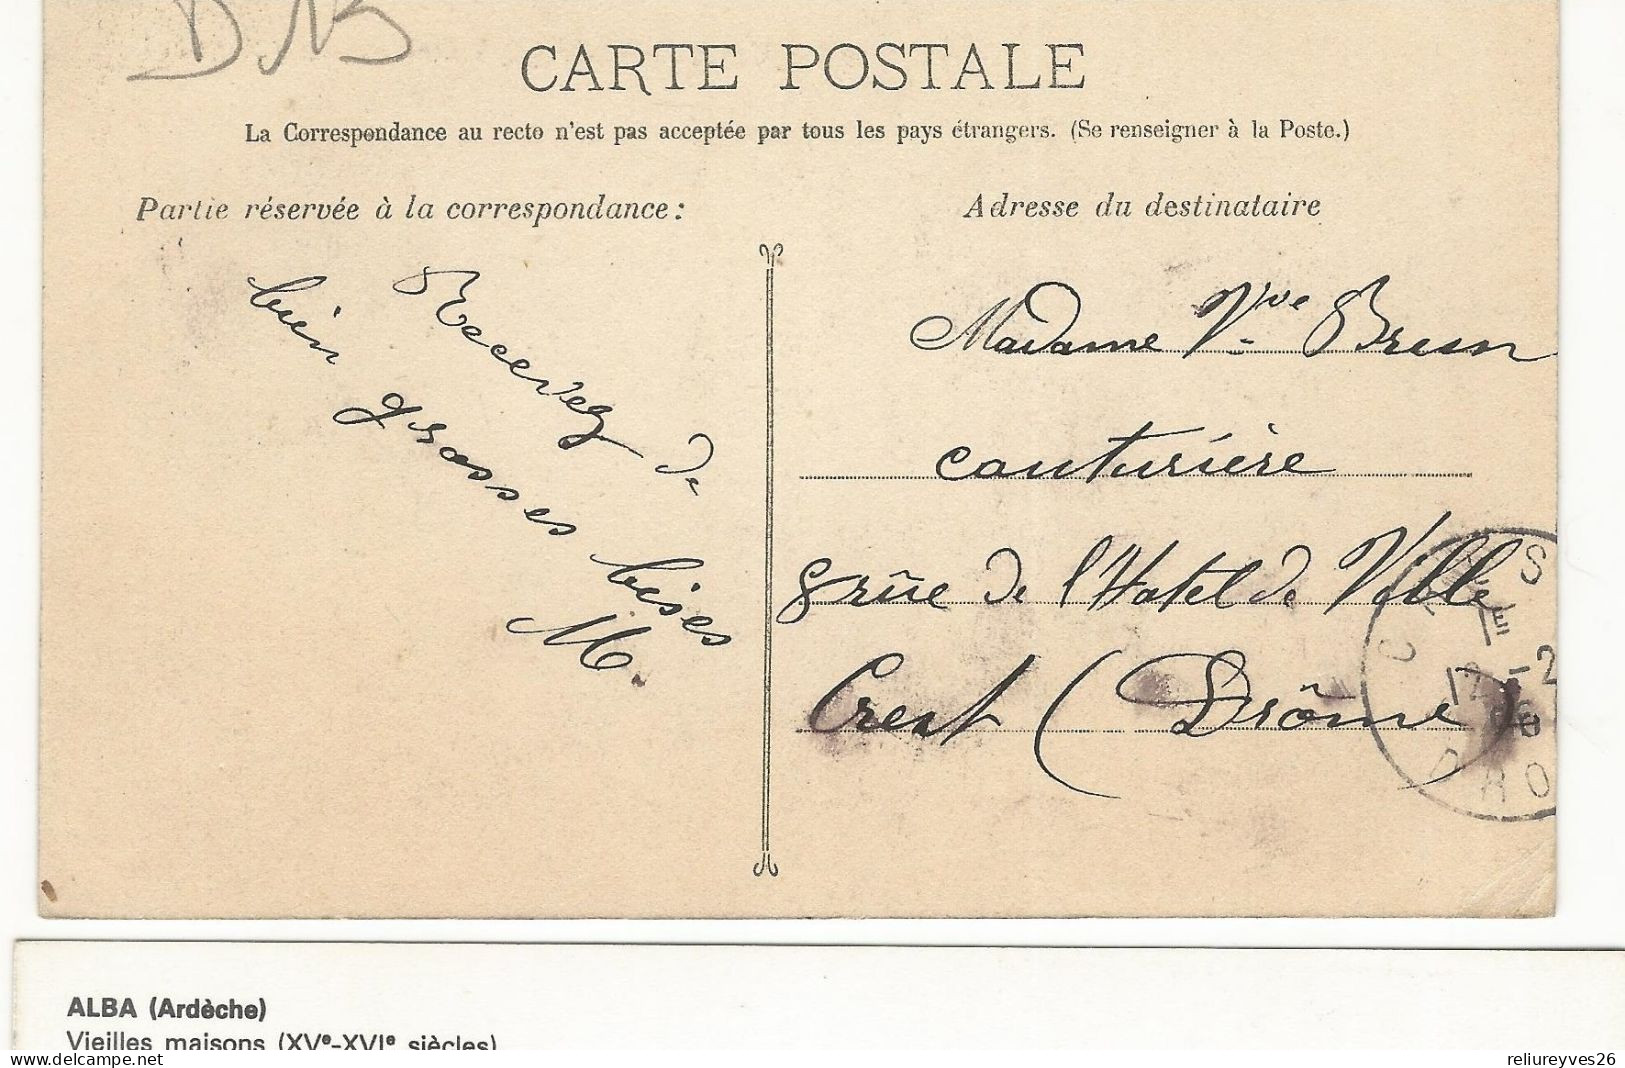 CPA, D.13 ,N°95, Marseille, La Gare St. Charles ( Arrivée ) Animée  Ed. Guende . 1906 - Bahnhof, Belle De Mai, Plombières